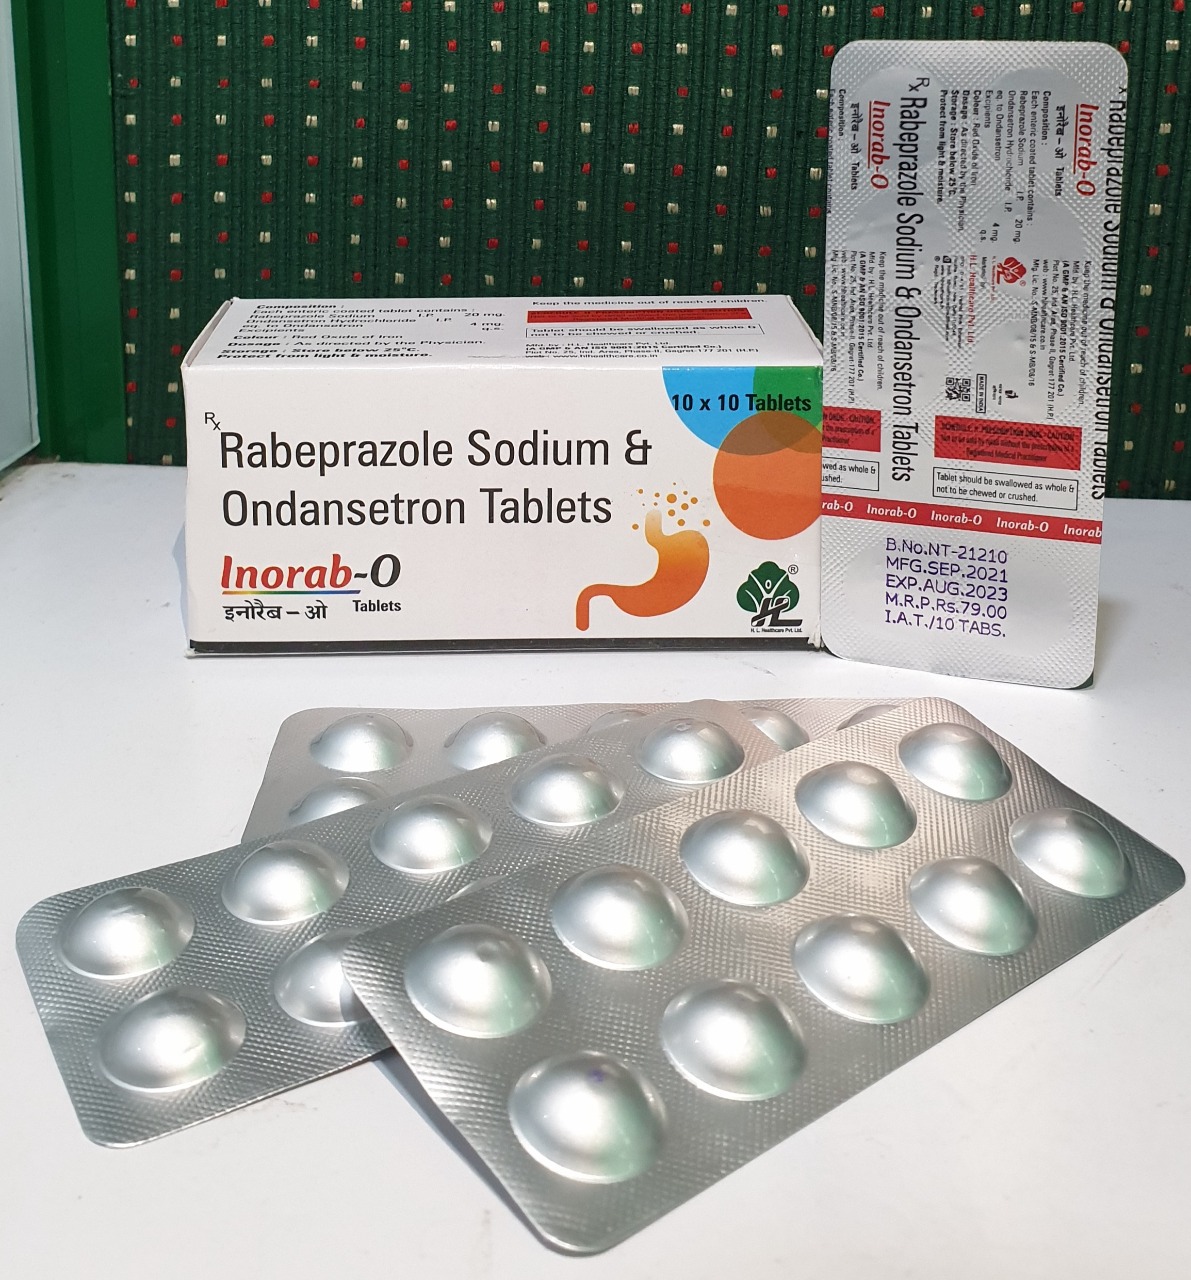 rabeprazole sodium &ondanserton
tablet